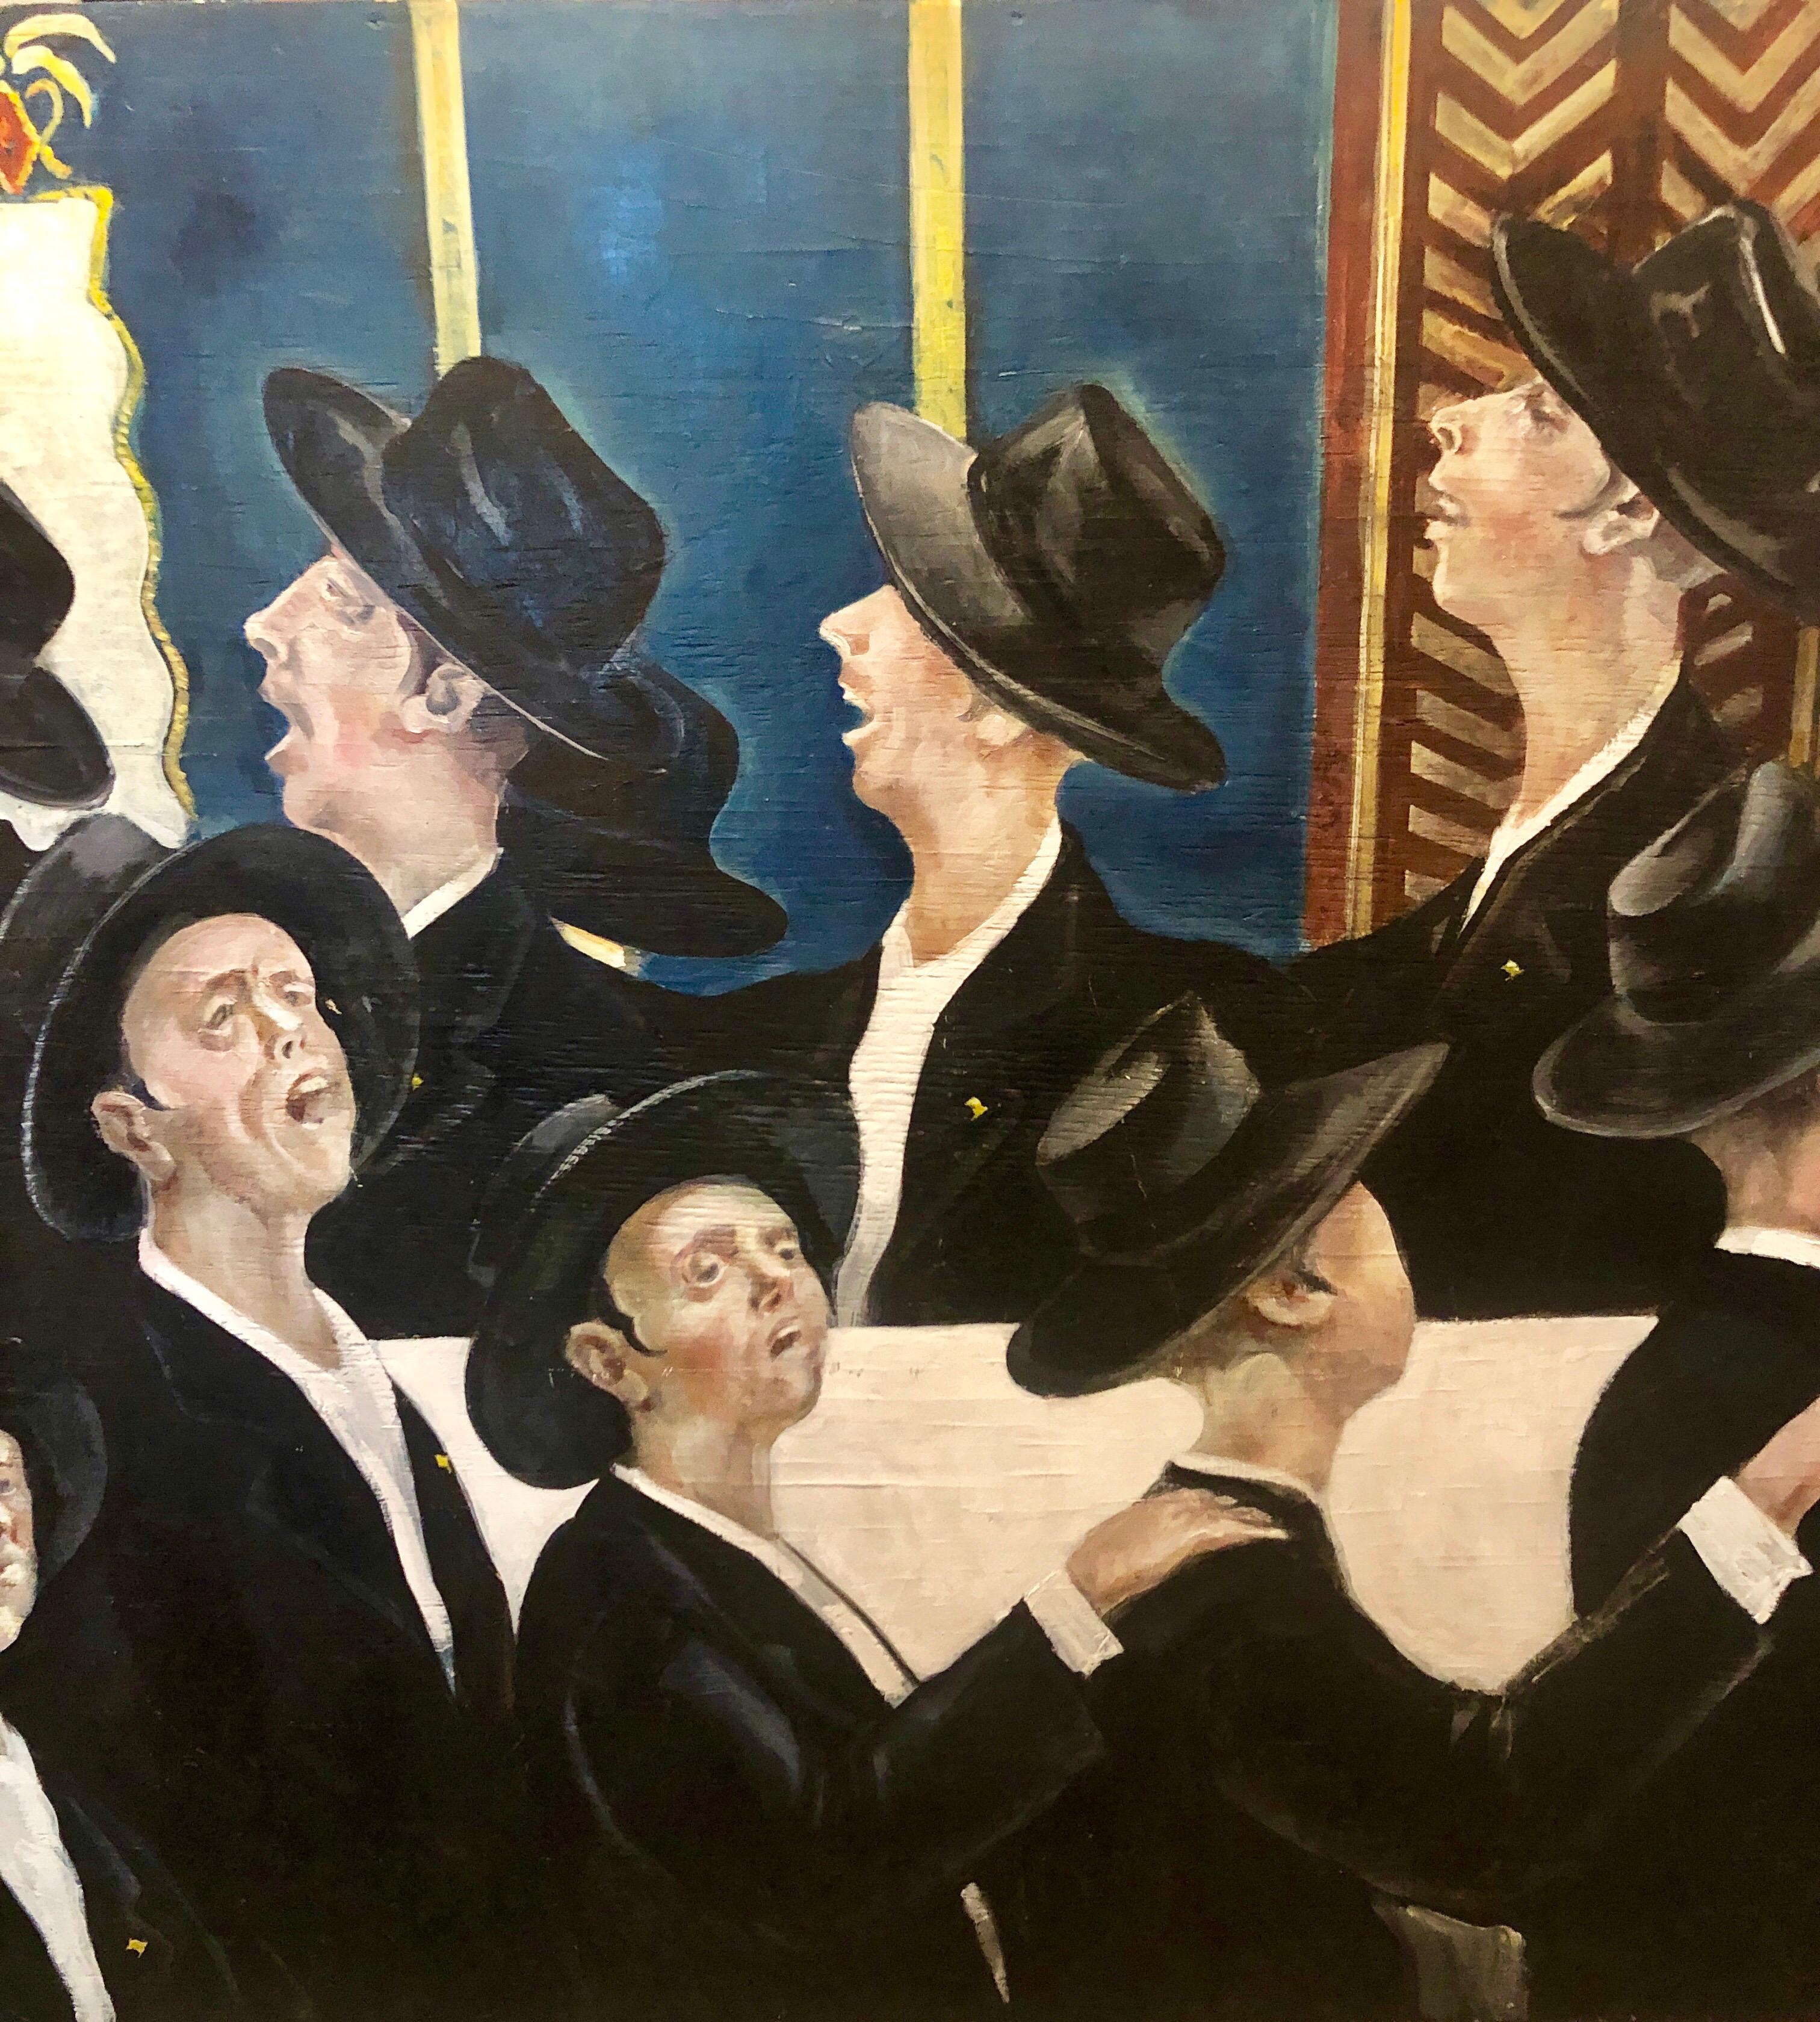 Bochurim dansant 770 Chabad Synagogue judaïque Jewish Chassidic Art peinture à l'huile - Artisanat Painting par Michael Gleizer